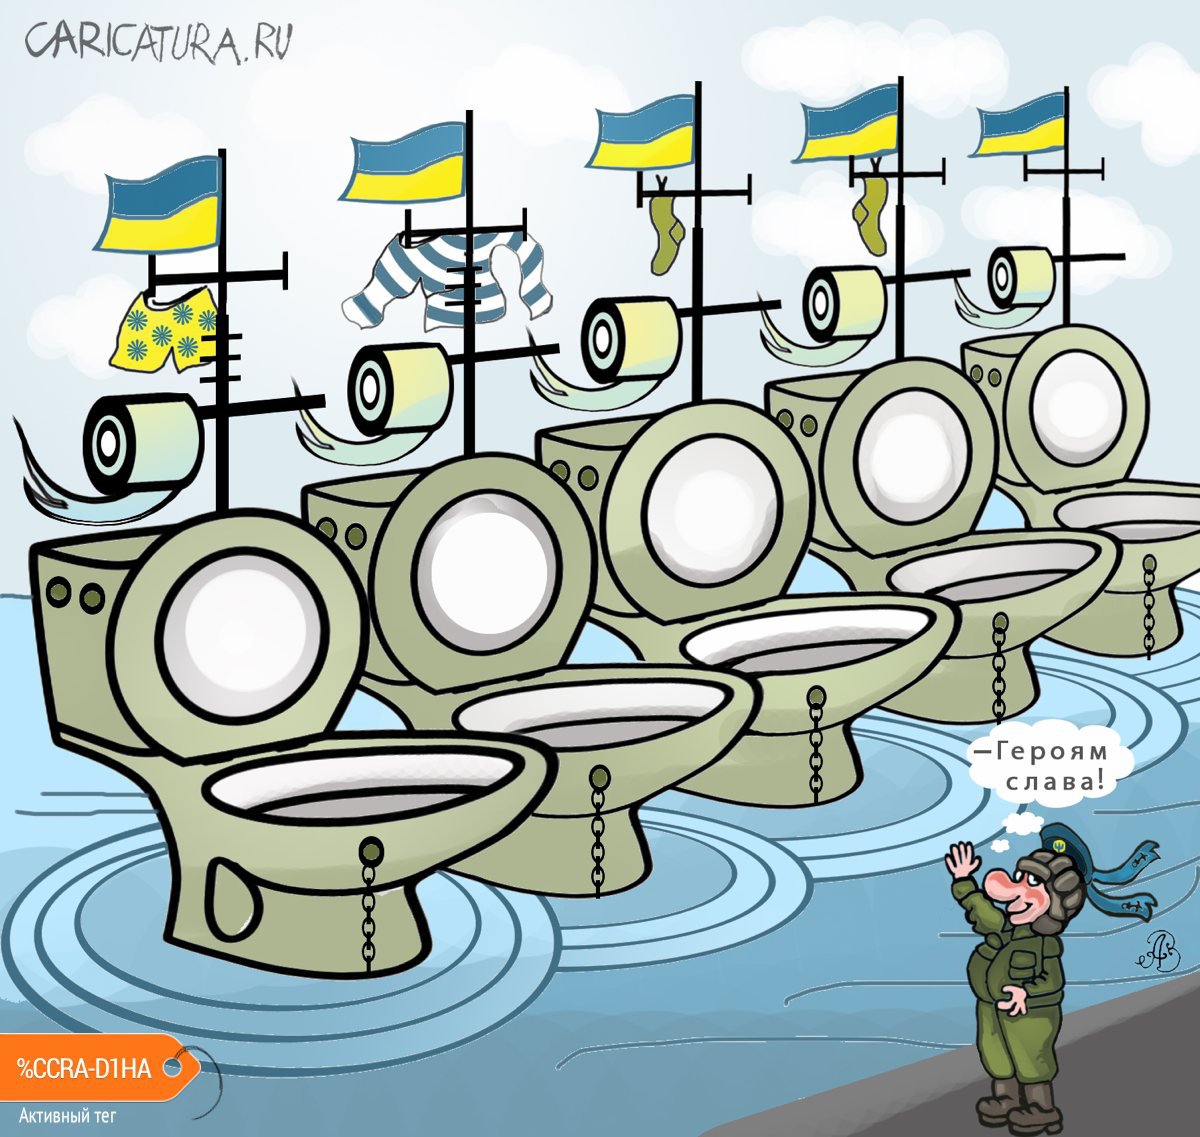 Карикатура "Новый девизион кораблей ВМС Украины", Андрей Ребров